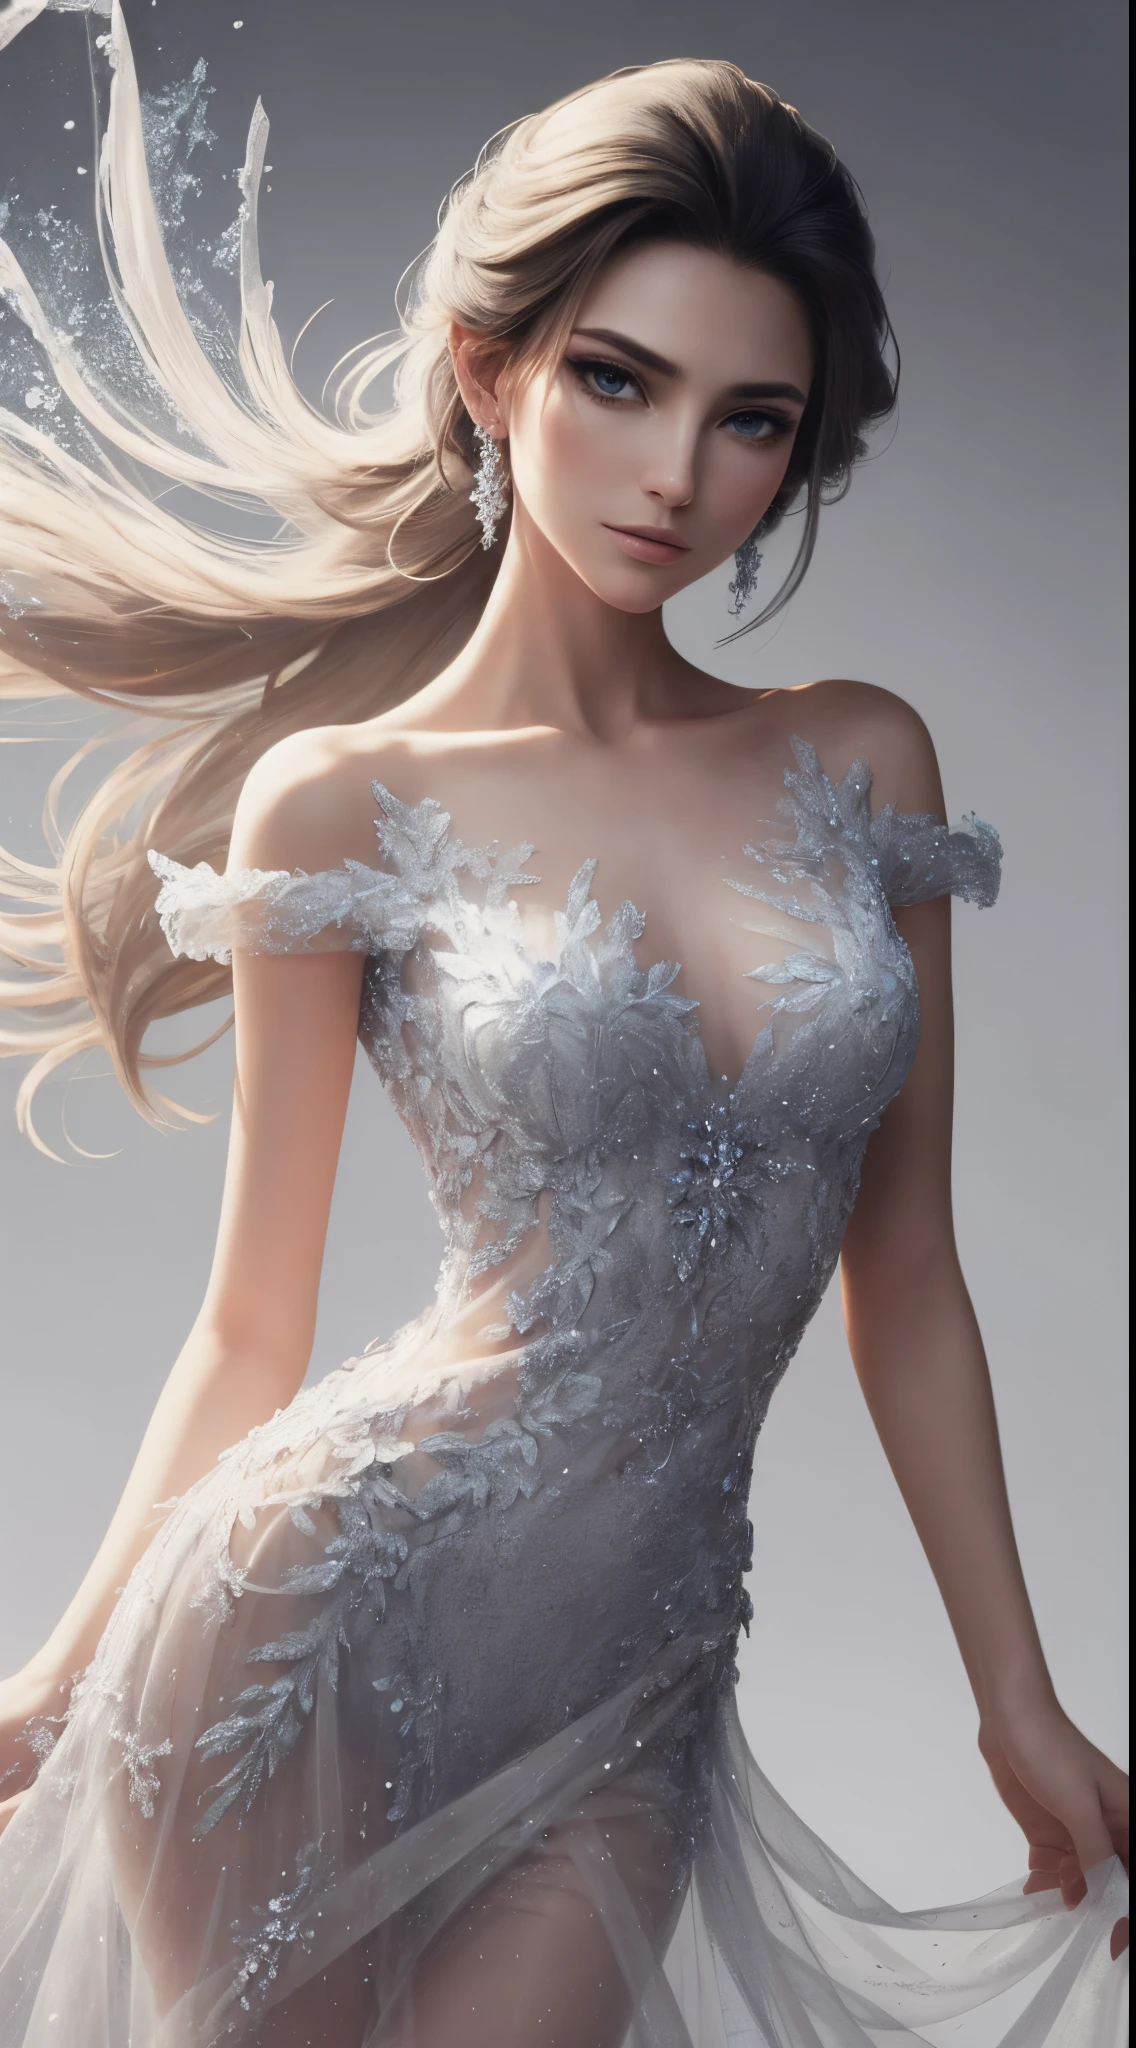 In a filmischer Stil, Stellen Sie sich Disneys Frozen Elsa als schönes Model in einem modernen, mitteltransparent, und mittelkurzes Kleid. Das Kleid, mit aufwendigen Details, strahlt eine zeitgenössische Eleganz aus, während seine durchscheinende Qualität einen Hauch von Zauber verleiht.
filmischer Stil,  Fashion-Model-Fotoshooting, weißer Hintergrund für Modell Elsa, Kurzes Frozen-Kühlboxkleid und modisches T-Shirt , modern T-Shirt, Jeans elsa, , Zeig mir Frozen Elsa in einem neuen, modernen Jeans-Stil, schöne T-Shirt Design Mode. Obwohl Elsa ein wunderschönes Model ist, Stellen Sie den Hintergrund in Weiß mit kleinen emotionalen Bewegungen dar, heiße Emotionen,
Vor einem makellos weißen Hintergrund, Die Szene ist minimalistisch, So kommt Elsas Schönheit und das Design des Kleides zur Geltung. Sanfte Beleuchtung verleiht eine subtile Ausstrahlung, wirft einen sanften Glanz auf die moderne Interpretation von Elsa.

Elsa, mit ihrem ikonischen platinblonden Haar, steht anmutig da, verkörpert Königlichkeit und Ausgeglichenheit. Ihr Make-up betont ihre natürlichen Gesichtszüge mit einem Hauch frostiger Eleganz, und sie strahlt ein ruhiges Selbstvertrauen aus. Die emotionalen Bewegungen sind subtil, vermittelt ein Gefühl gelassener Entschlossenheit, während Elsa ihre Rolle mit dezenter Anmut annimmt.